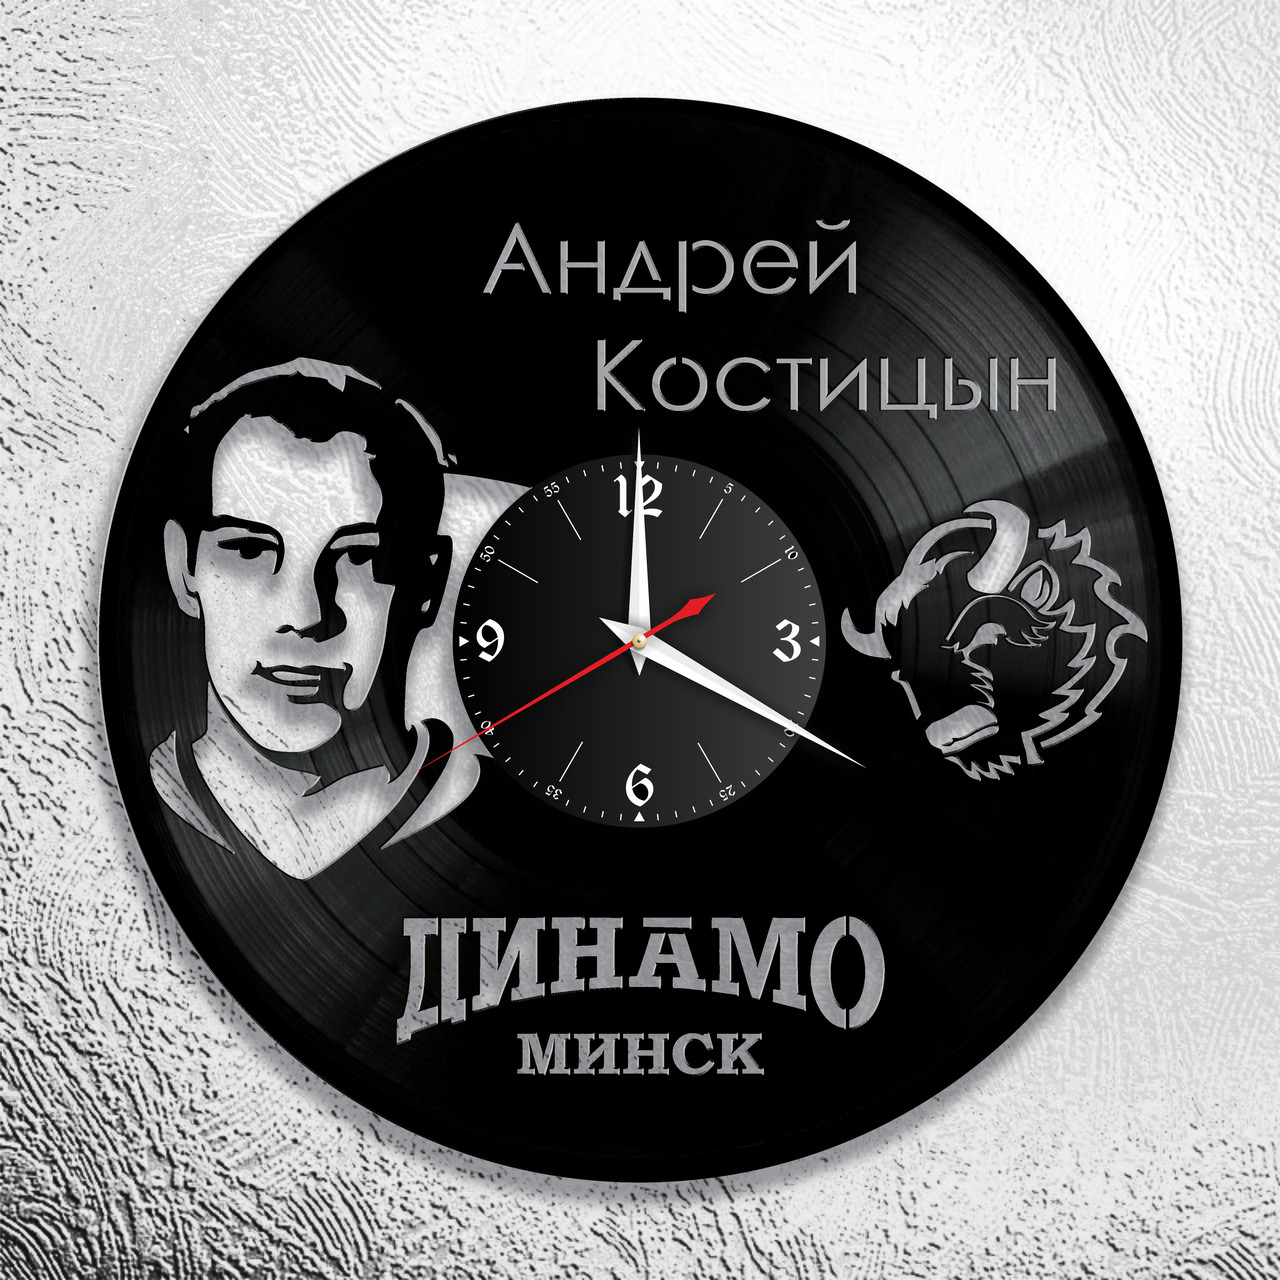 Оригинальные часы из виниловых пластинок  "Динамо" версия 1 (А.Костицын)